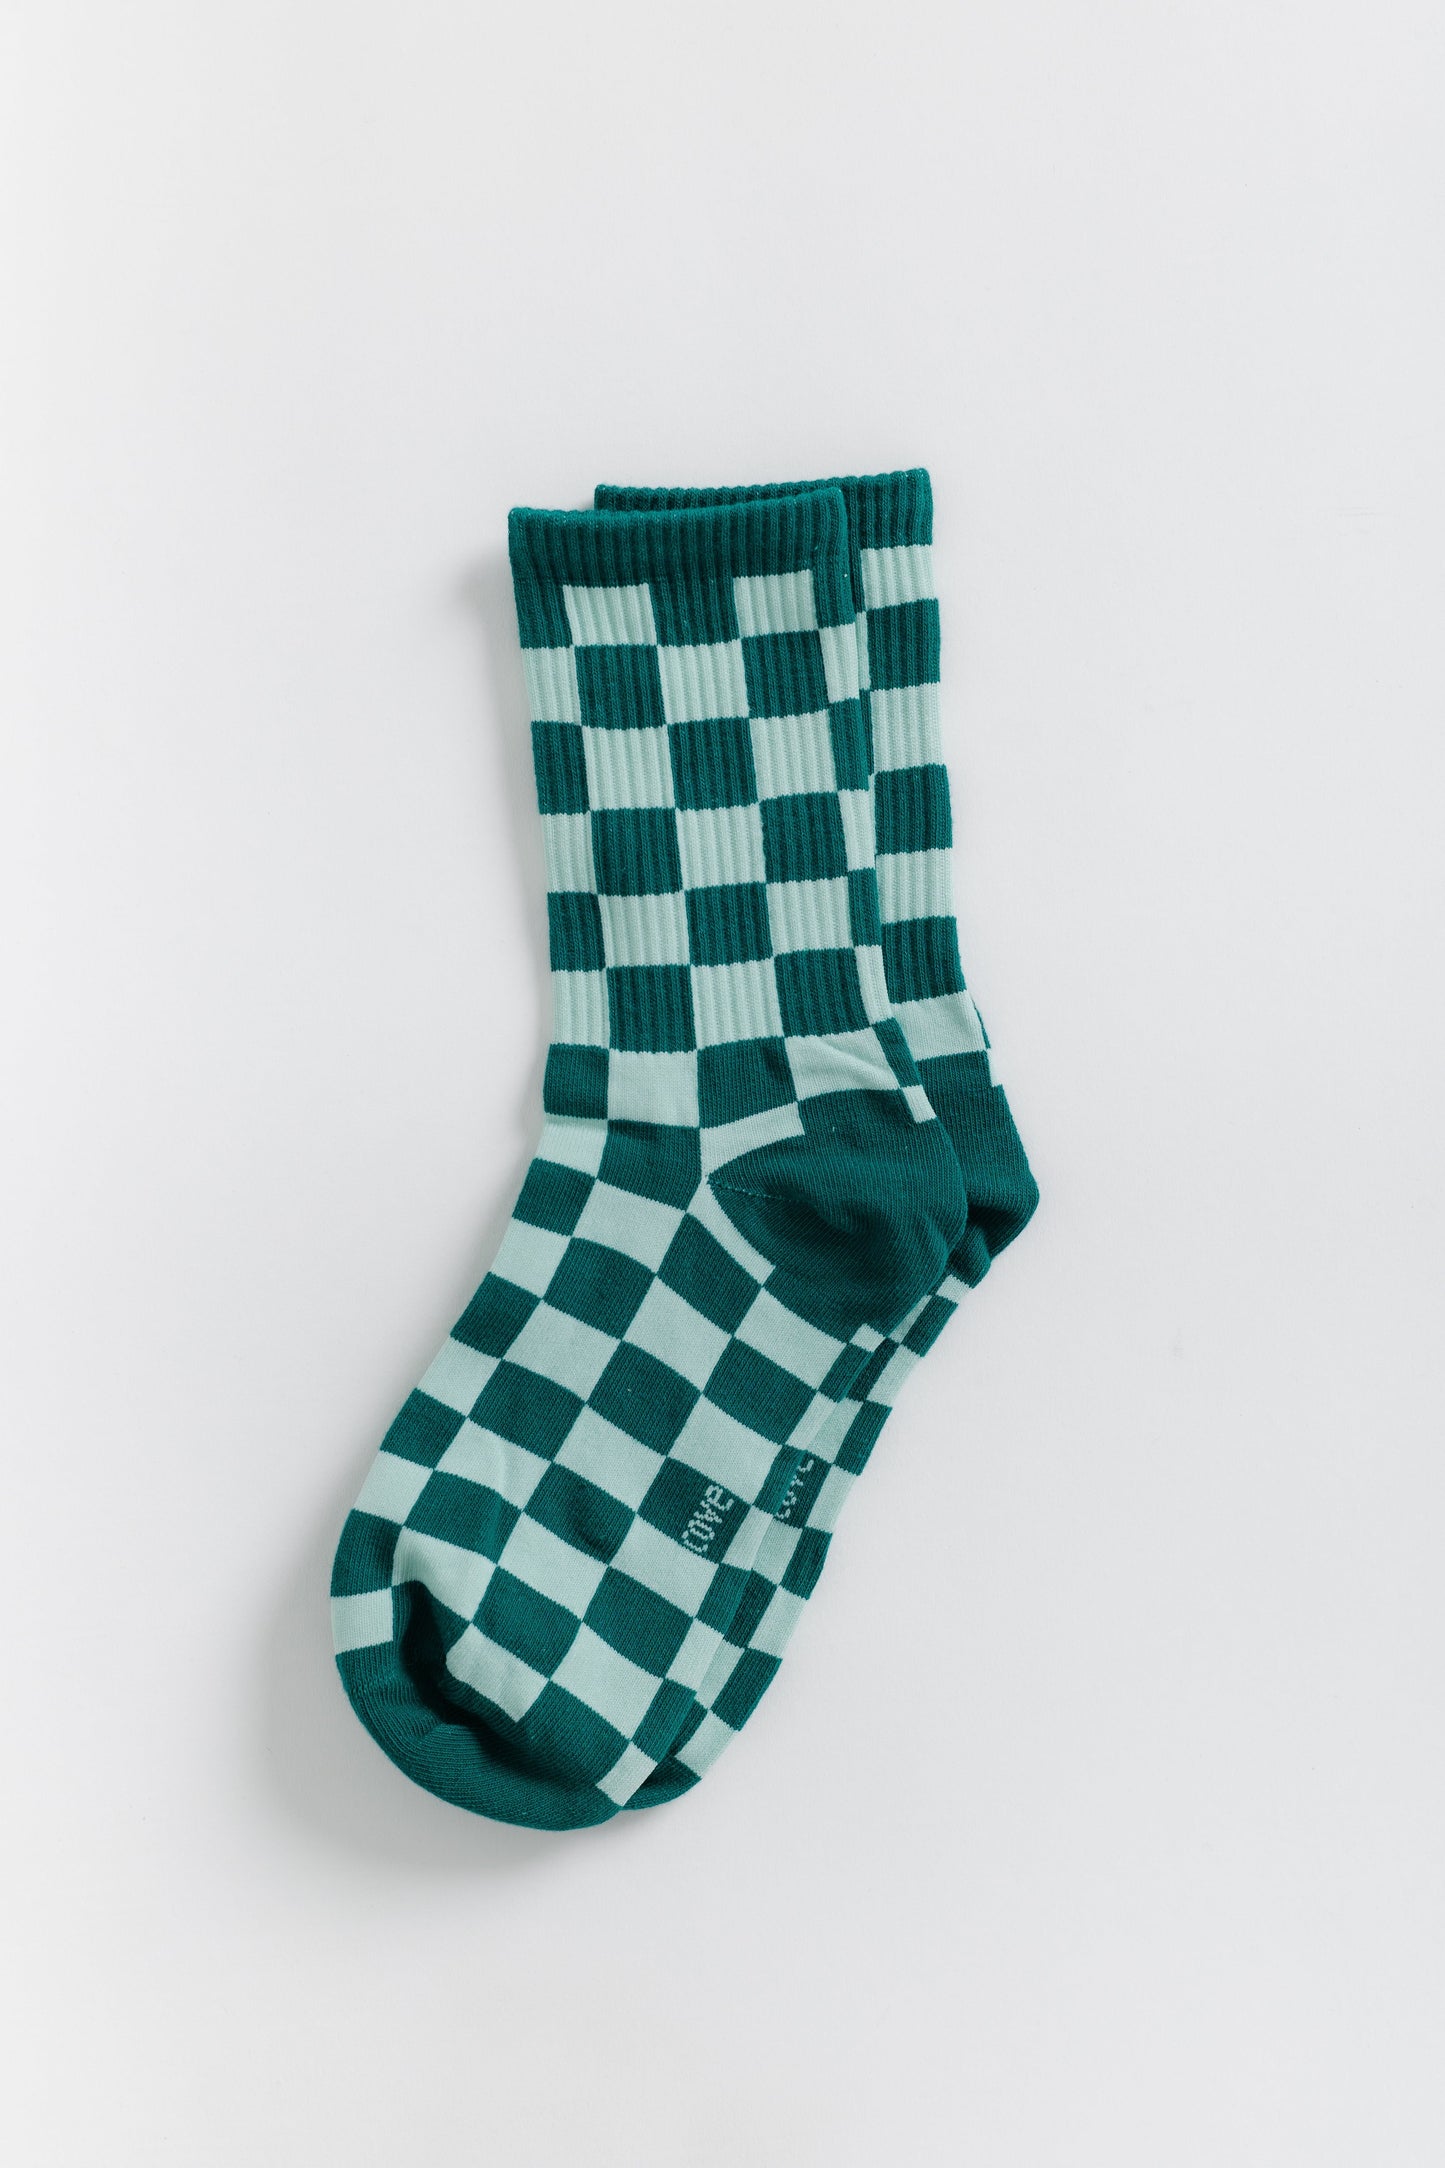 Cove Checker Retro Socks WOMEN'S SOCKS Cove Accessories Green/Seafoam OS 